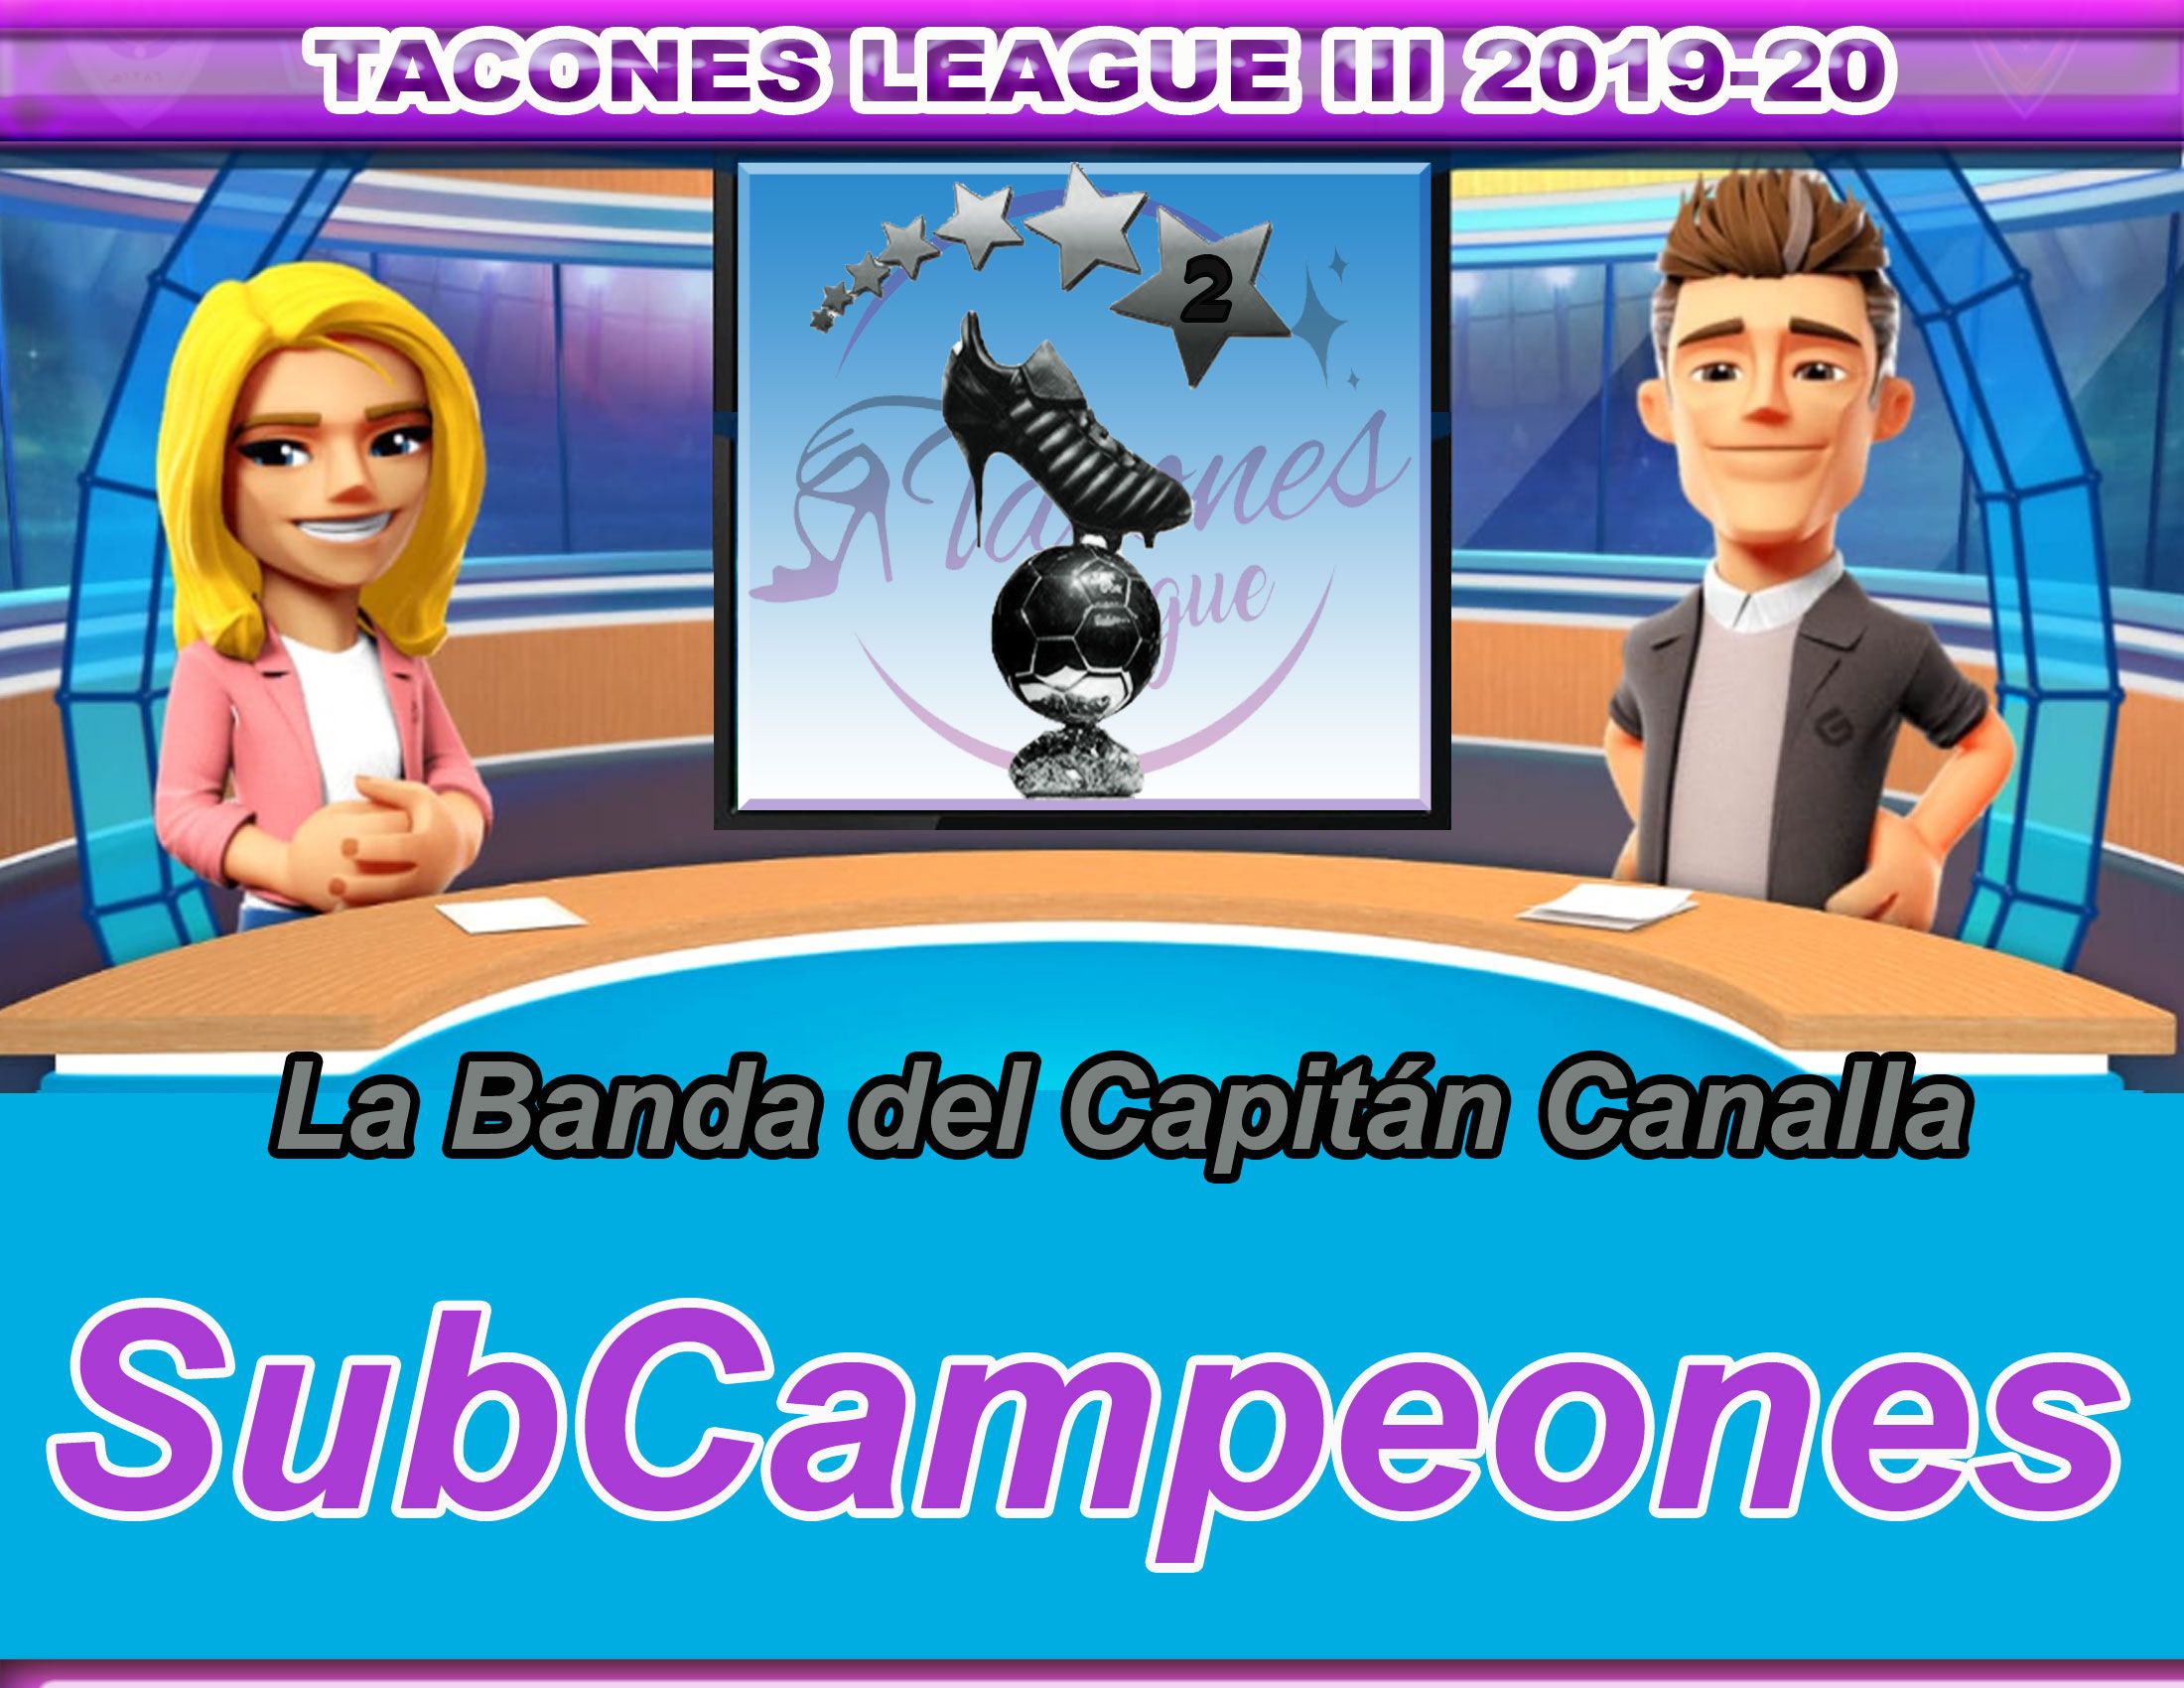 Tacones-League-Subcampeones.jpg